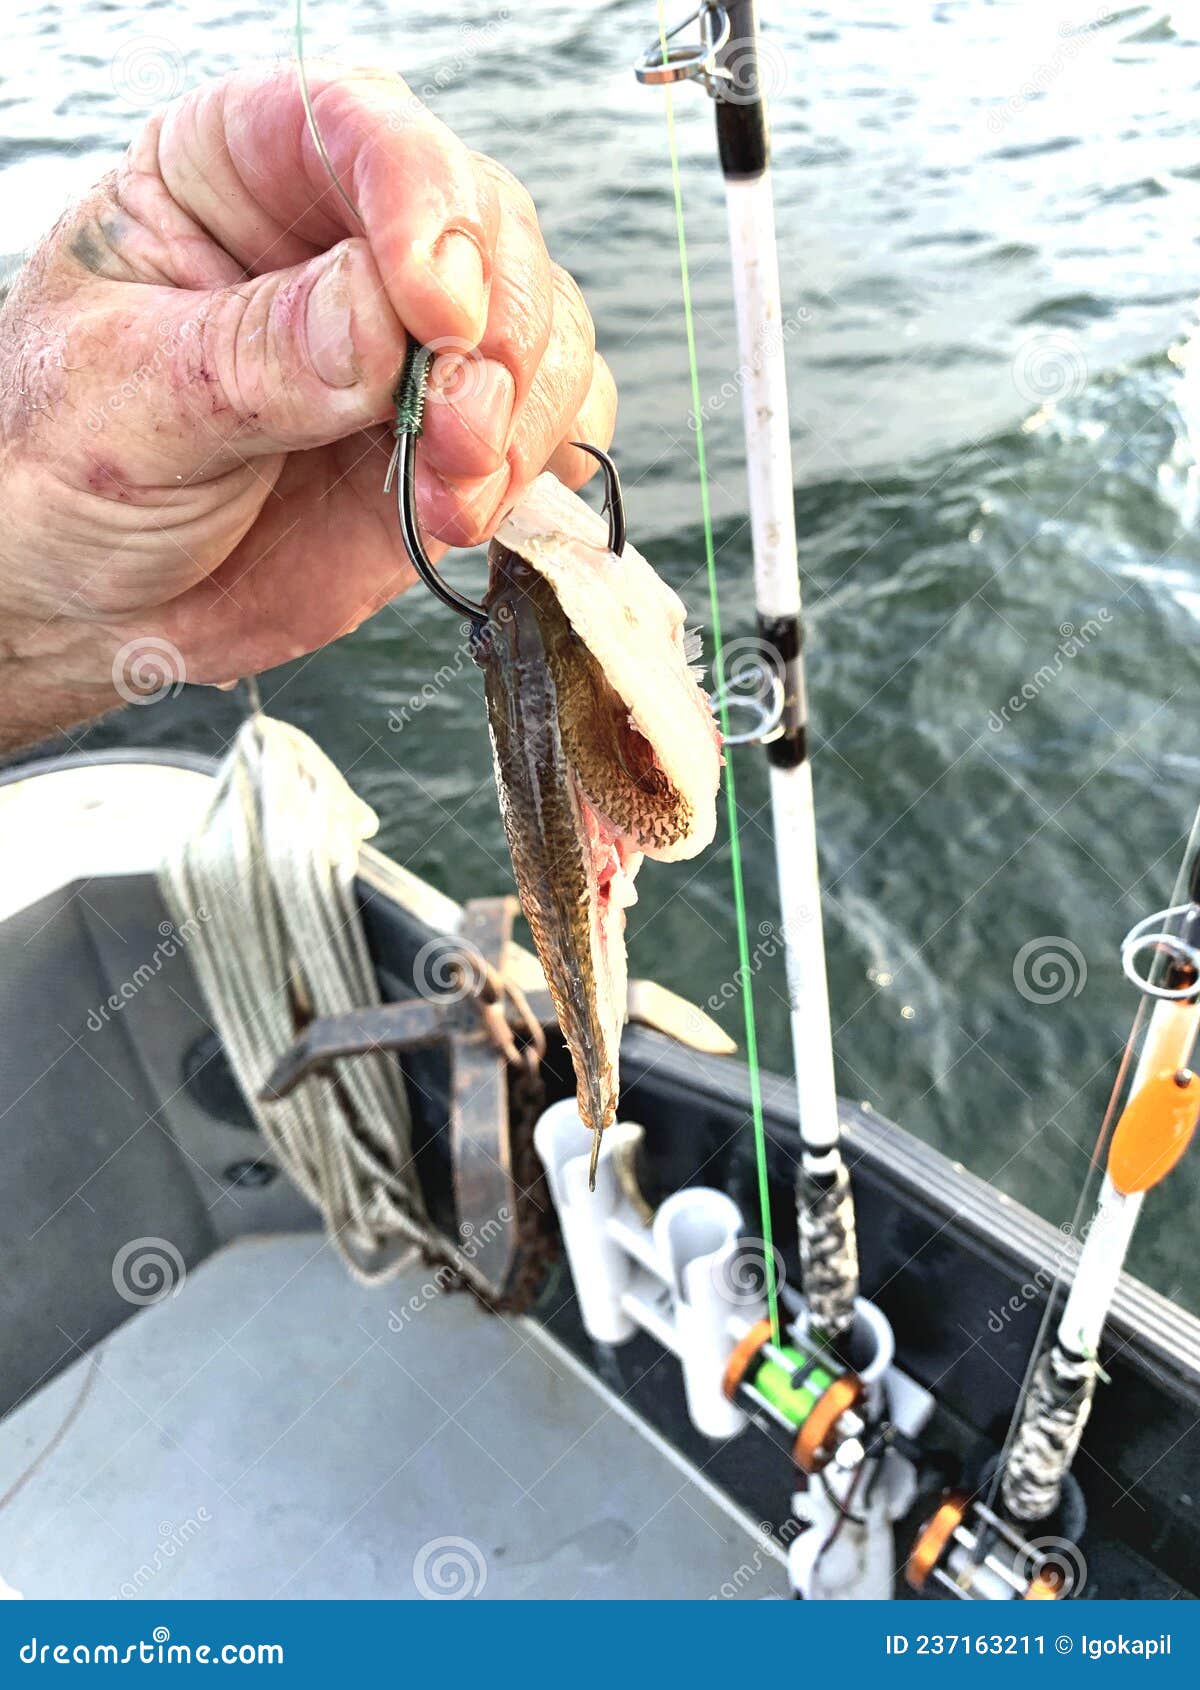 Bait Fishing Catfish Piece of Sunfish on Hook Stock Image - Image of  active, bait: 237163211